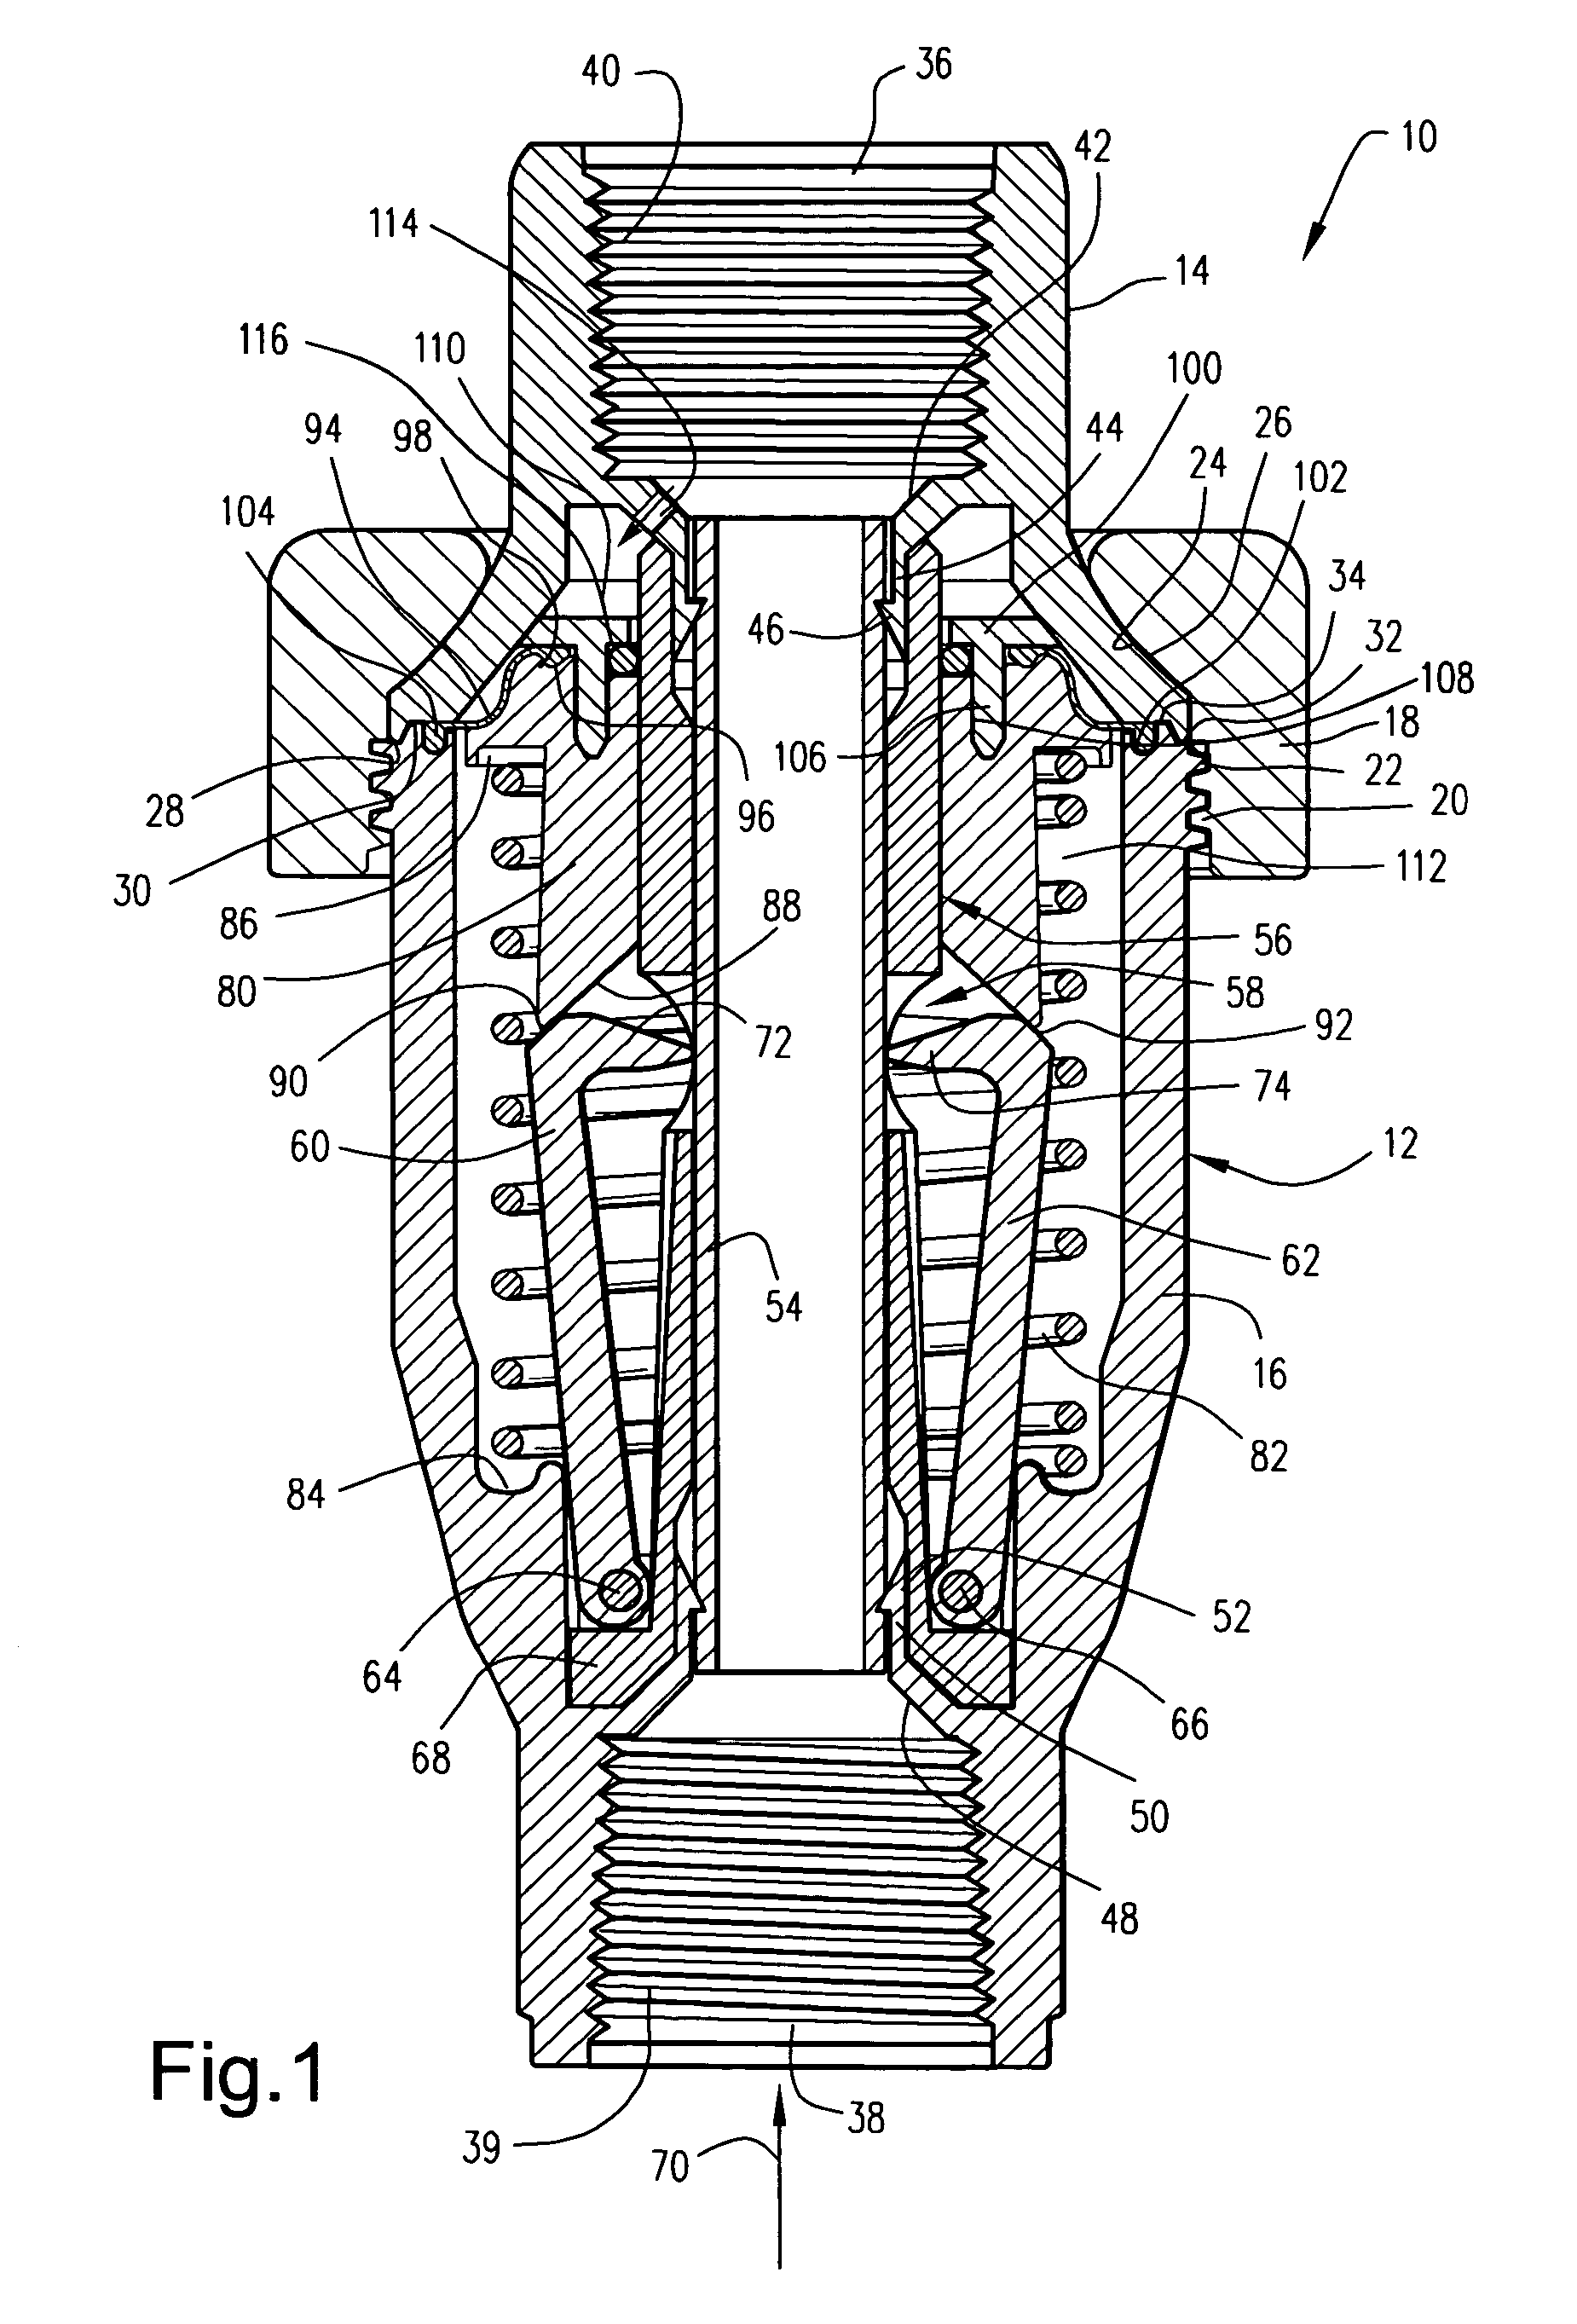 Flow through pressure regulator with pinch valve